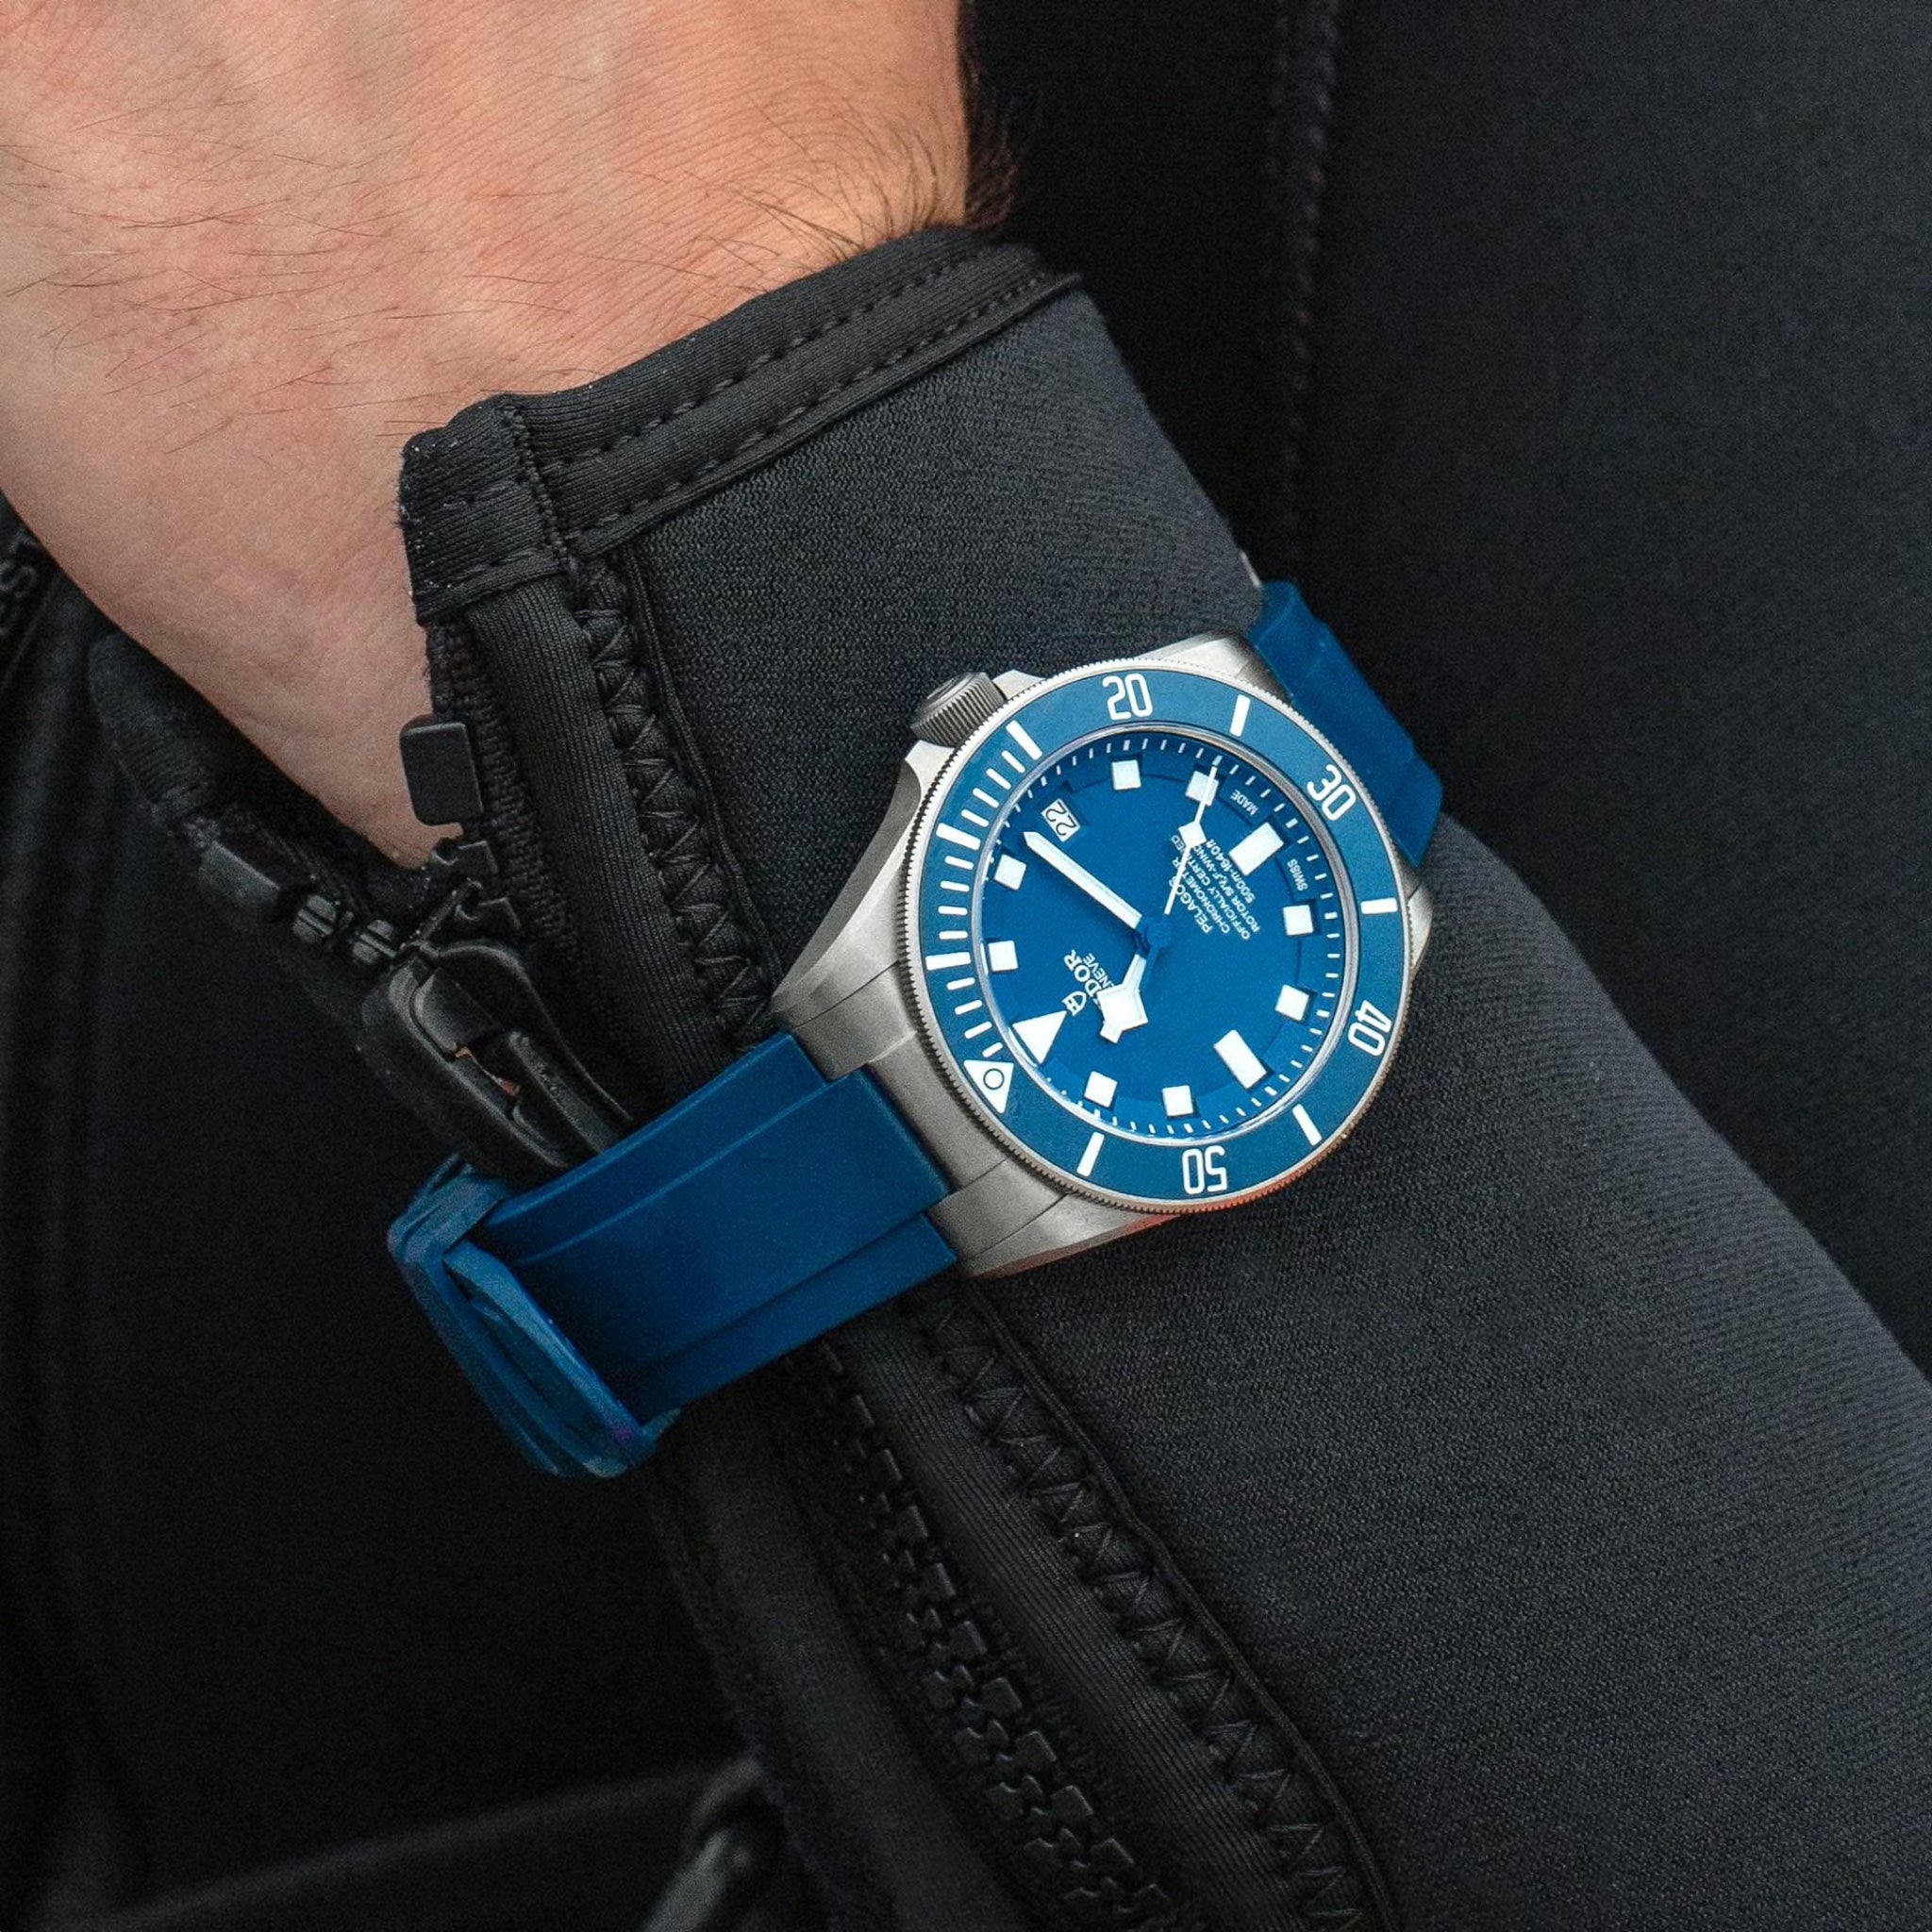 Tudor Pelagos 42 Blue Titanium Watch M25600TB